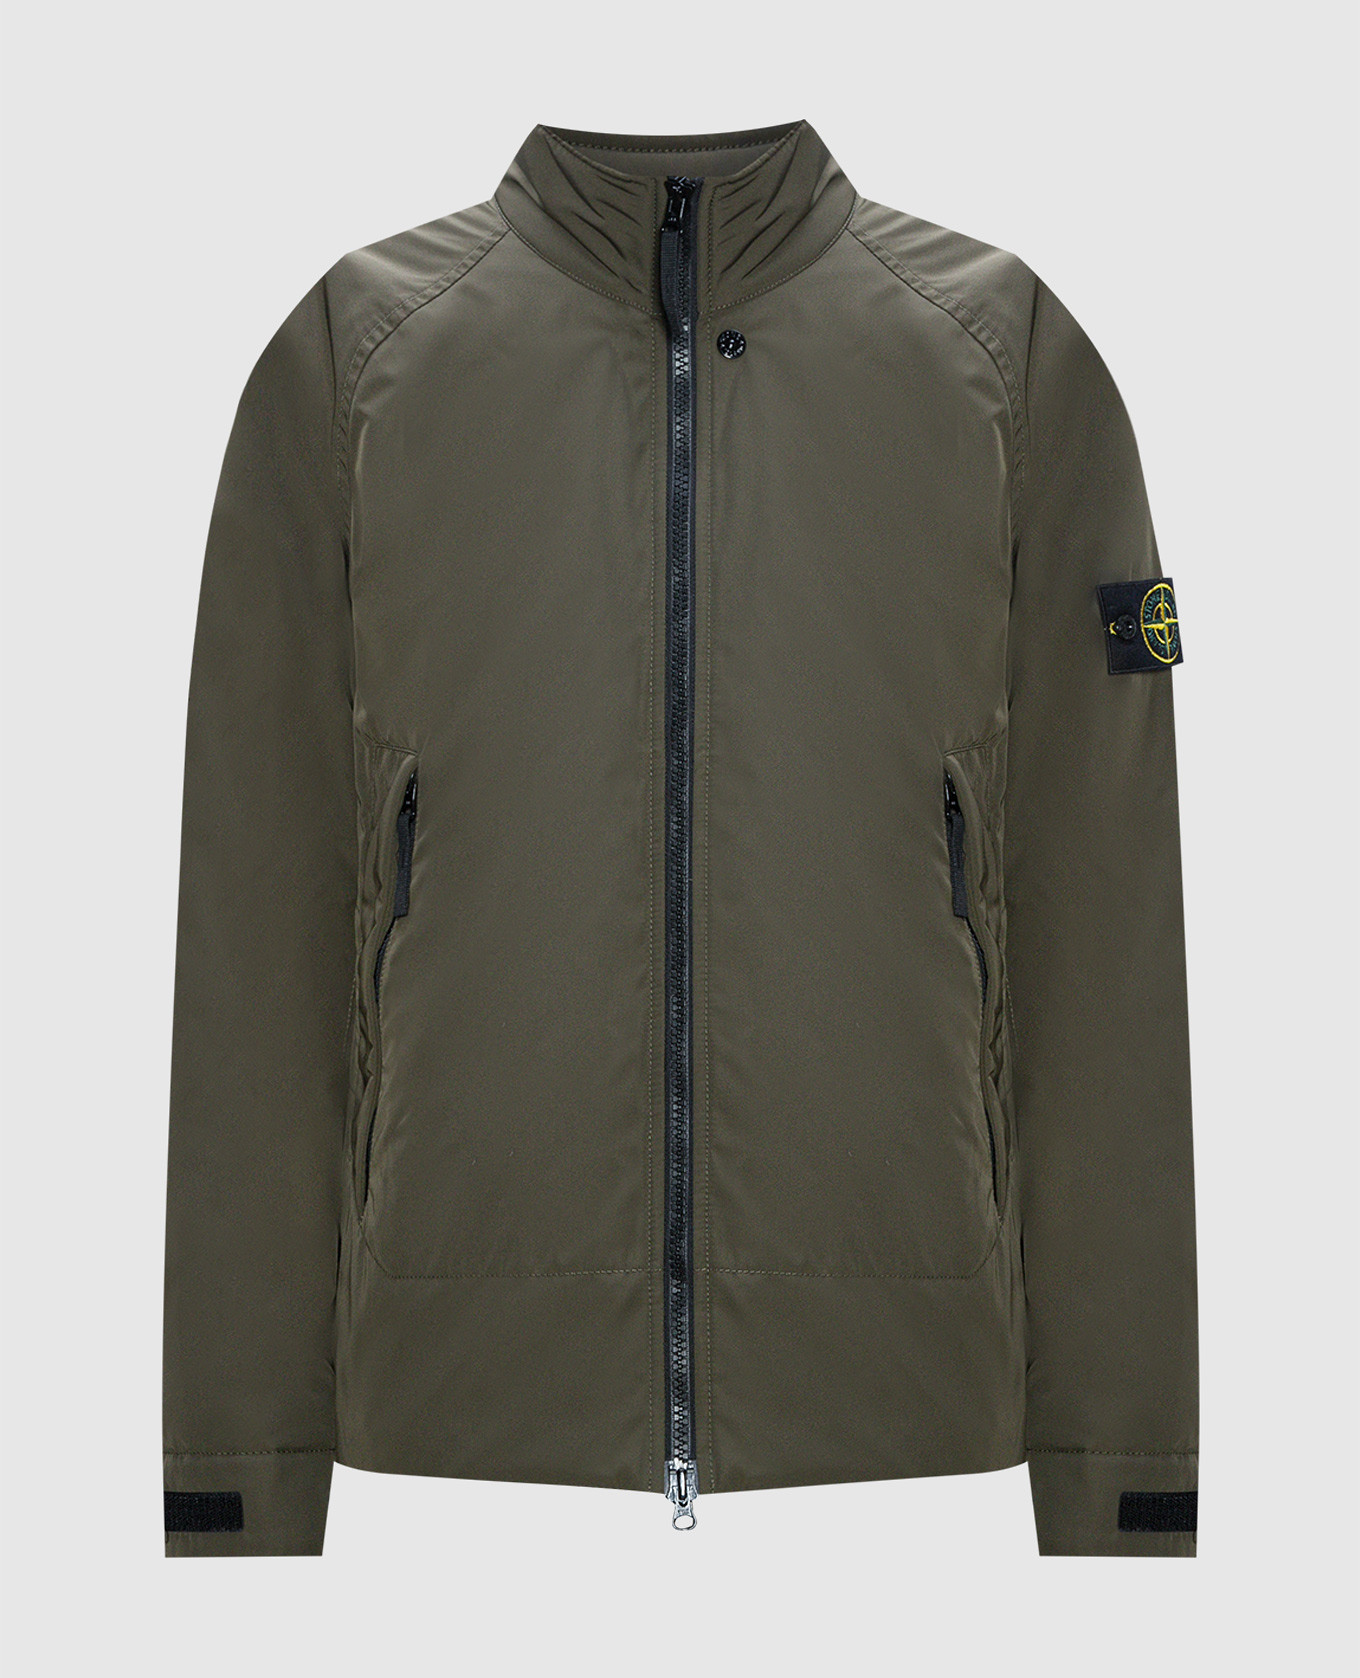 Stone Island - Khaki jacket with logo 791541926 - buy with Belgium ...